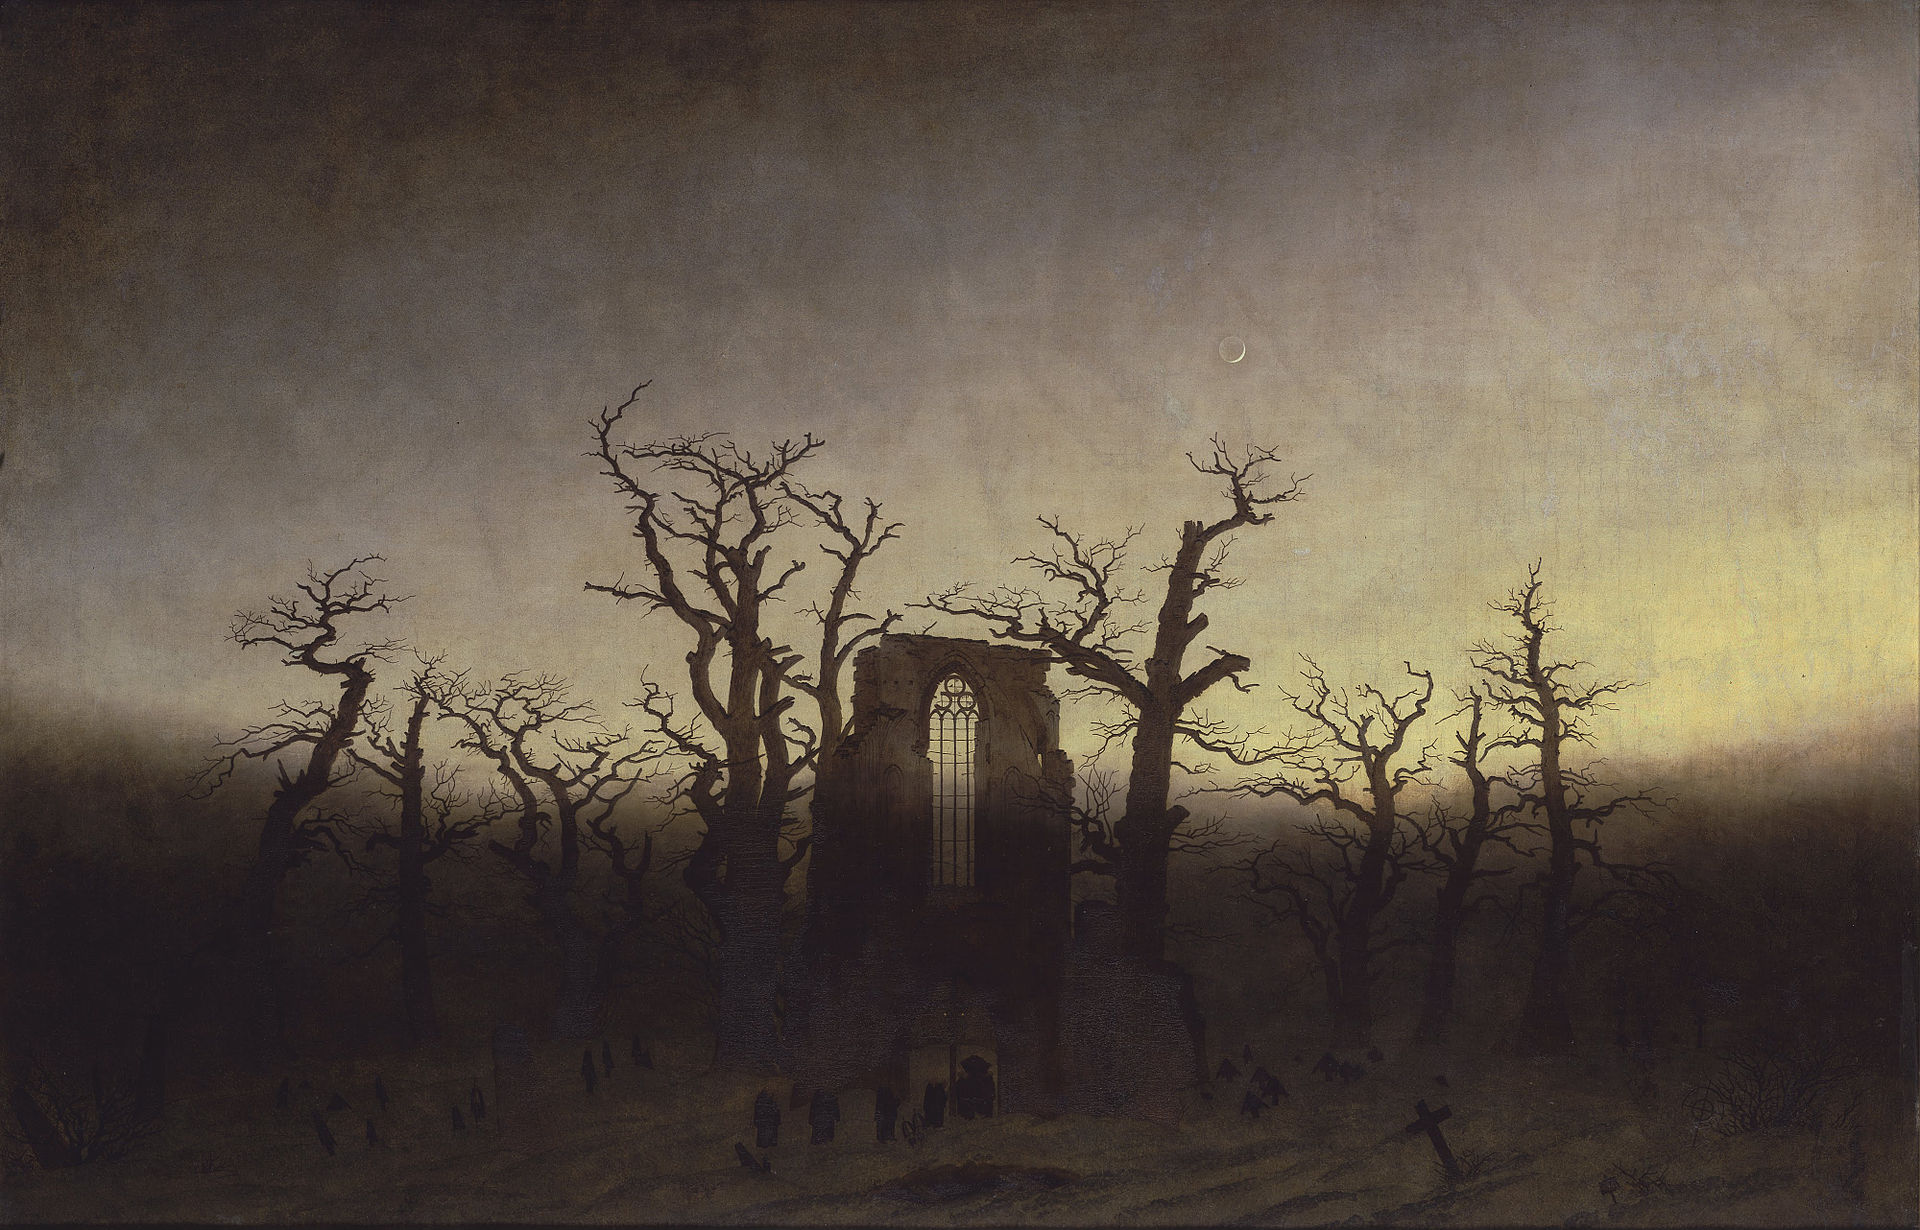 Abtei im Eichwald, auch Mönchsbegräbnis im Eichenhain, ist ein zwischen 1809 und 1810 entstandenes Gemälde von Caspar David Friedrich